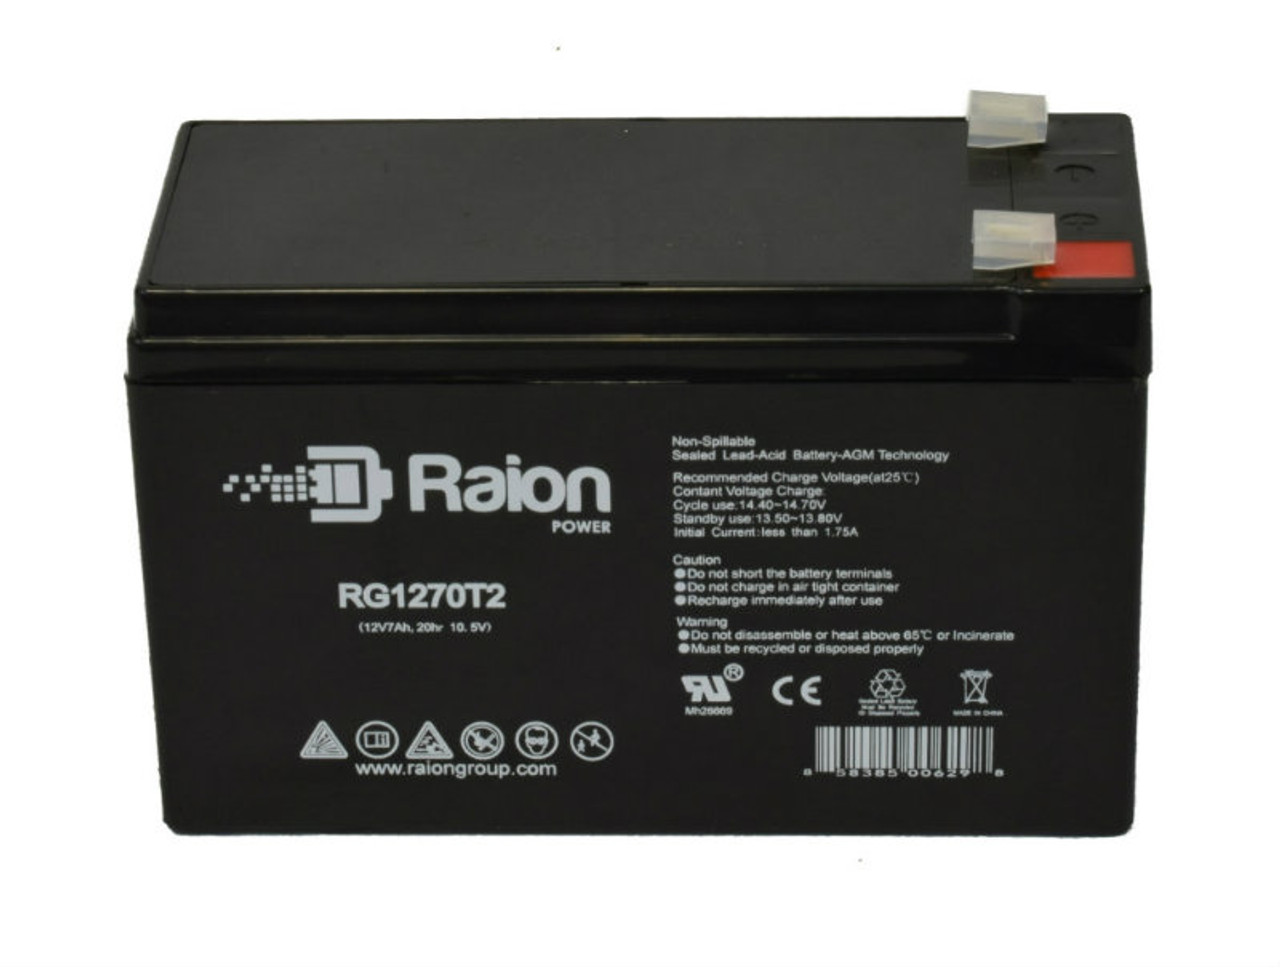 Raion Power RG1270T2 12V 7Ah Lead Acid Battery for Stannah Starla 600 Straight Stairlift